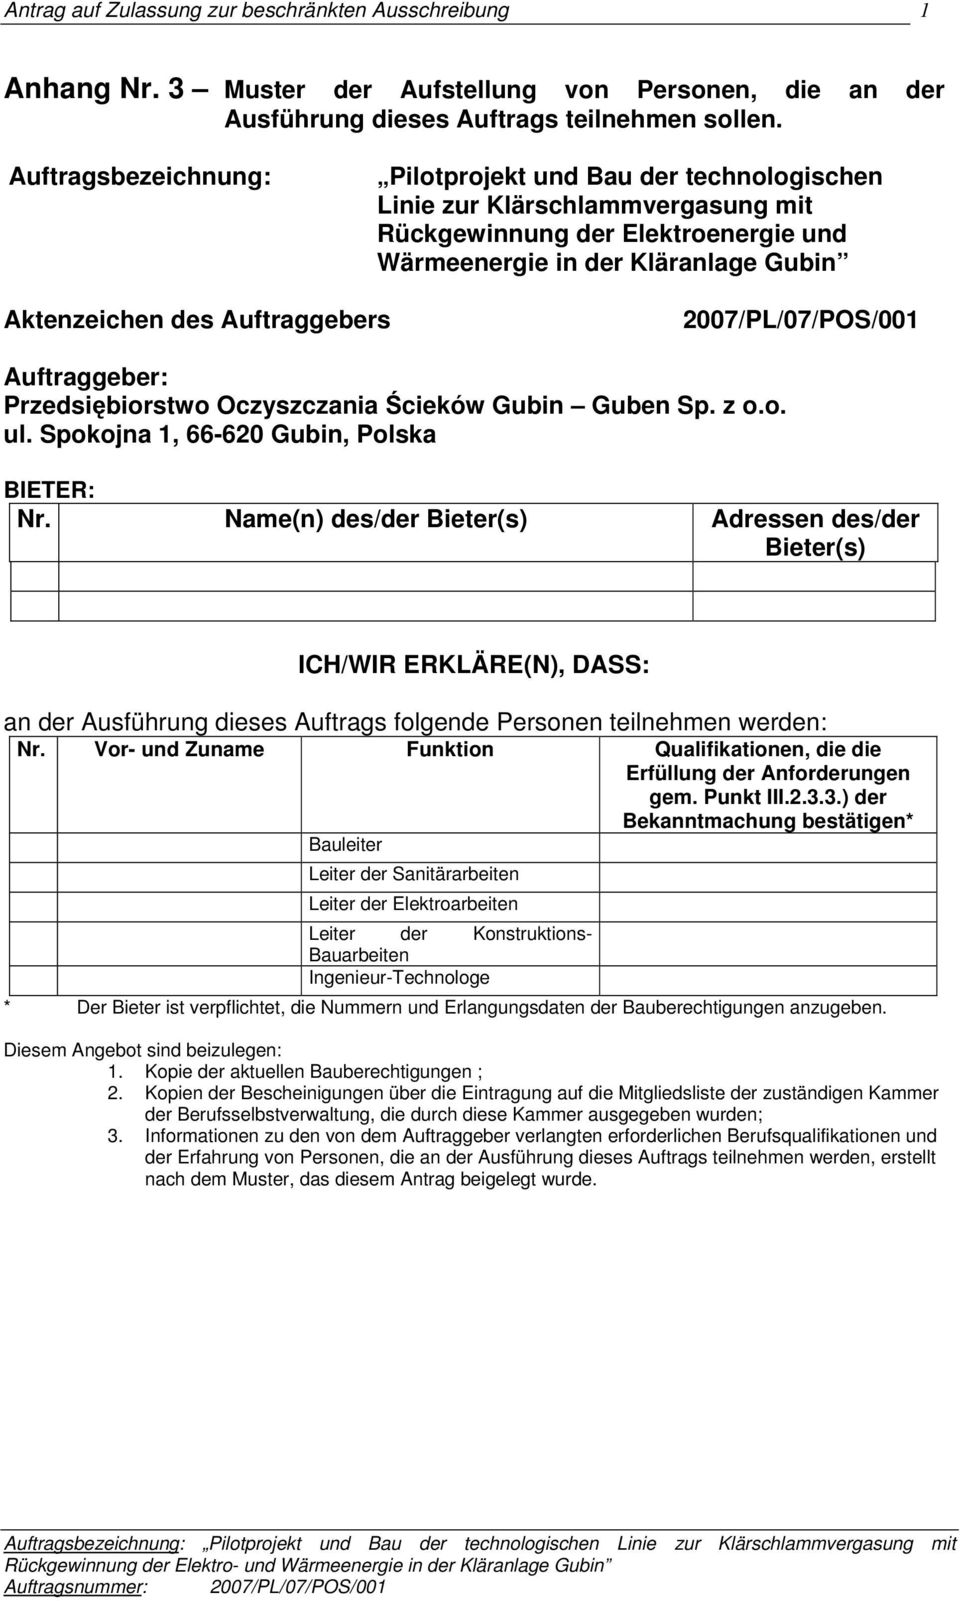 2007/PL/07/POS/001 : Przedsiębiorstwo Oczyszczania Ścieków Gubin Guben Sp. z o.o. ul.